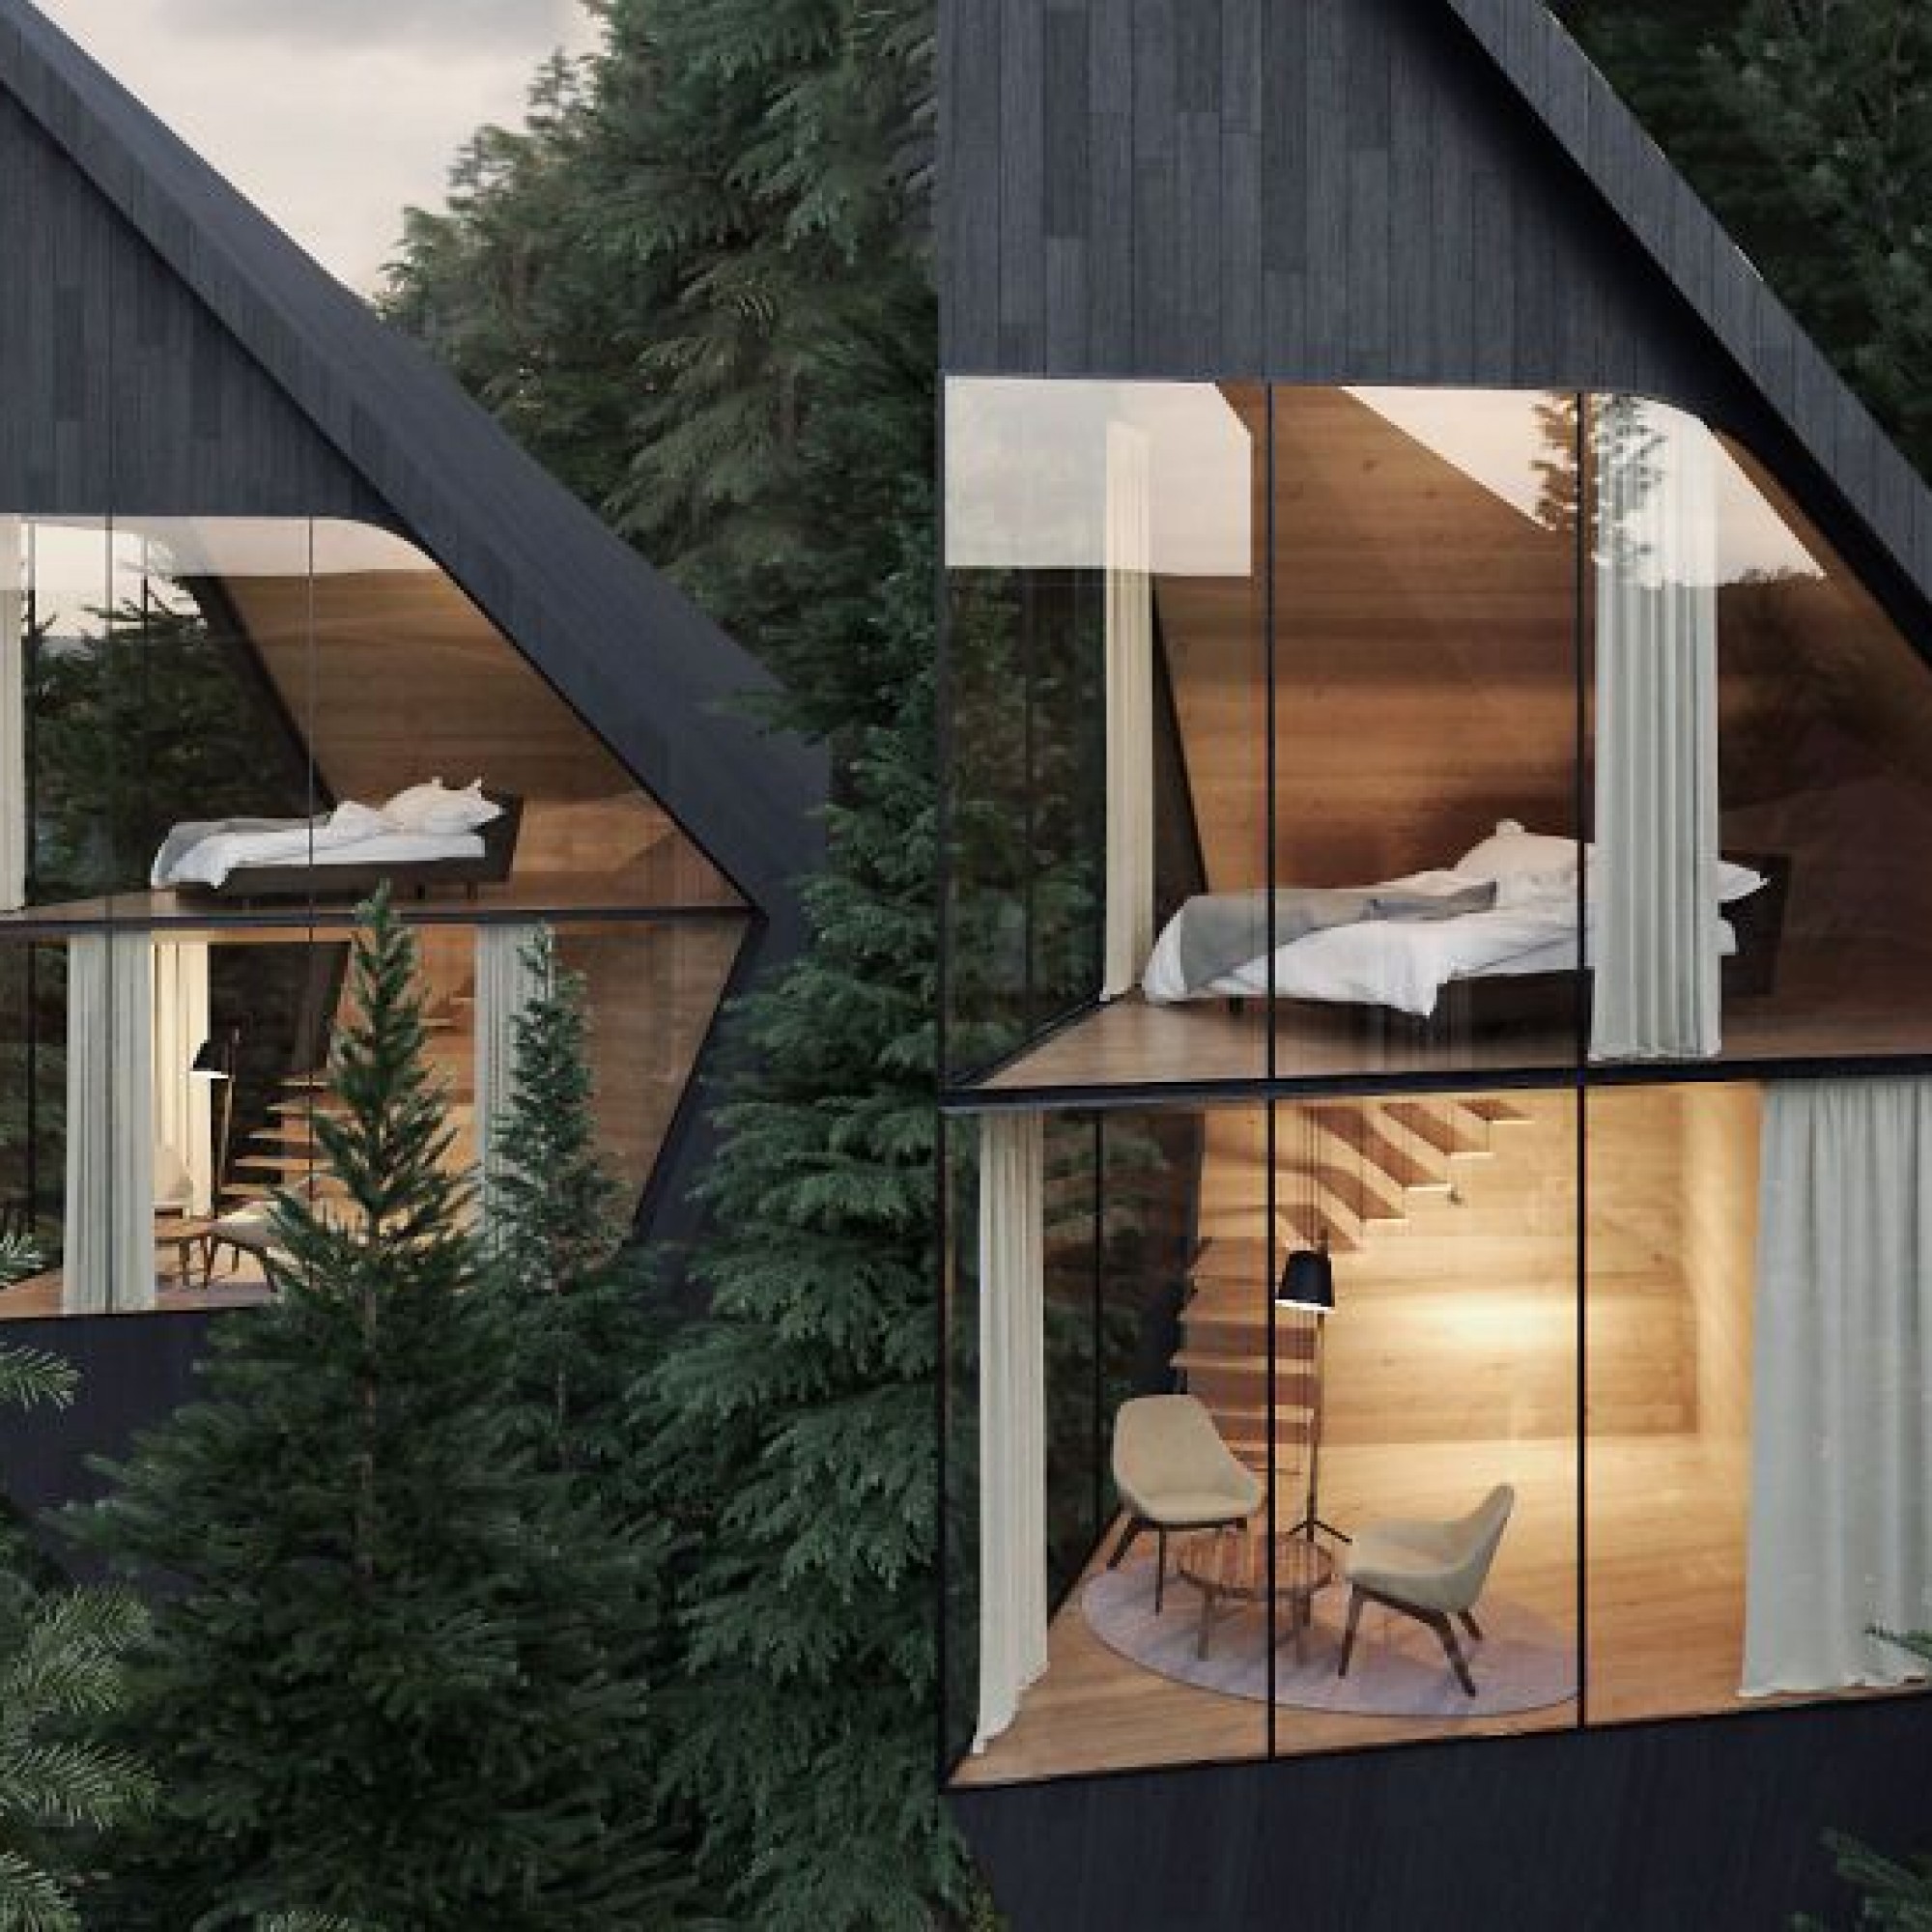 Die Strukturen der Häuser sollen fast ausschliesslich aus heimischem Lärchen- und Tannenholz gebaut werden.